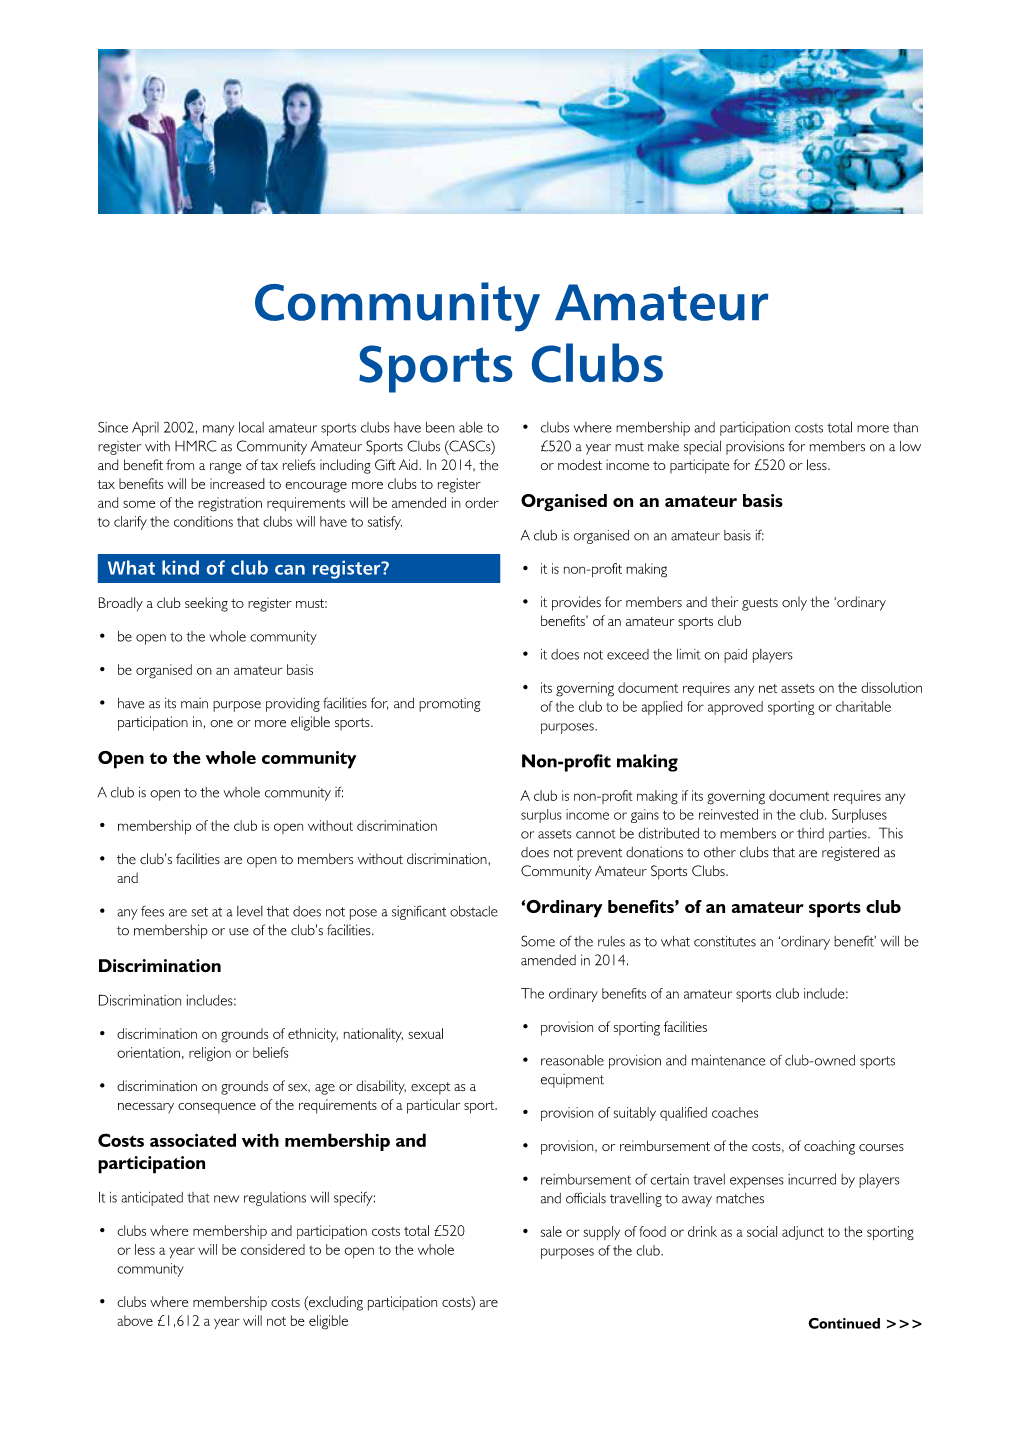 Community Amateur Sports Clubs